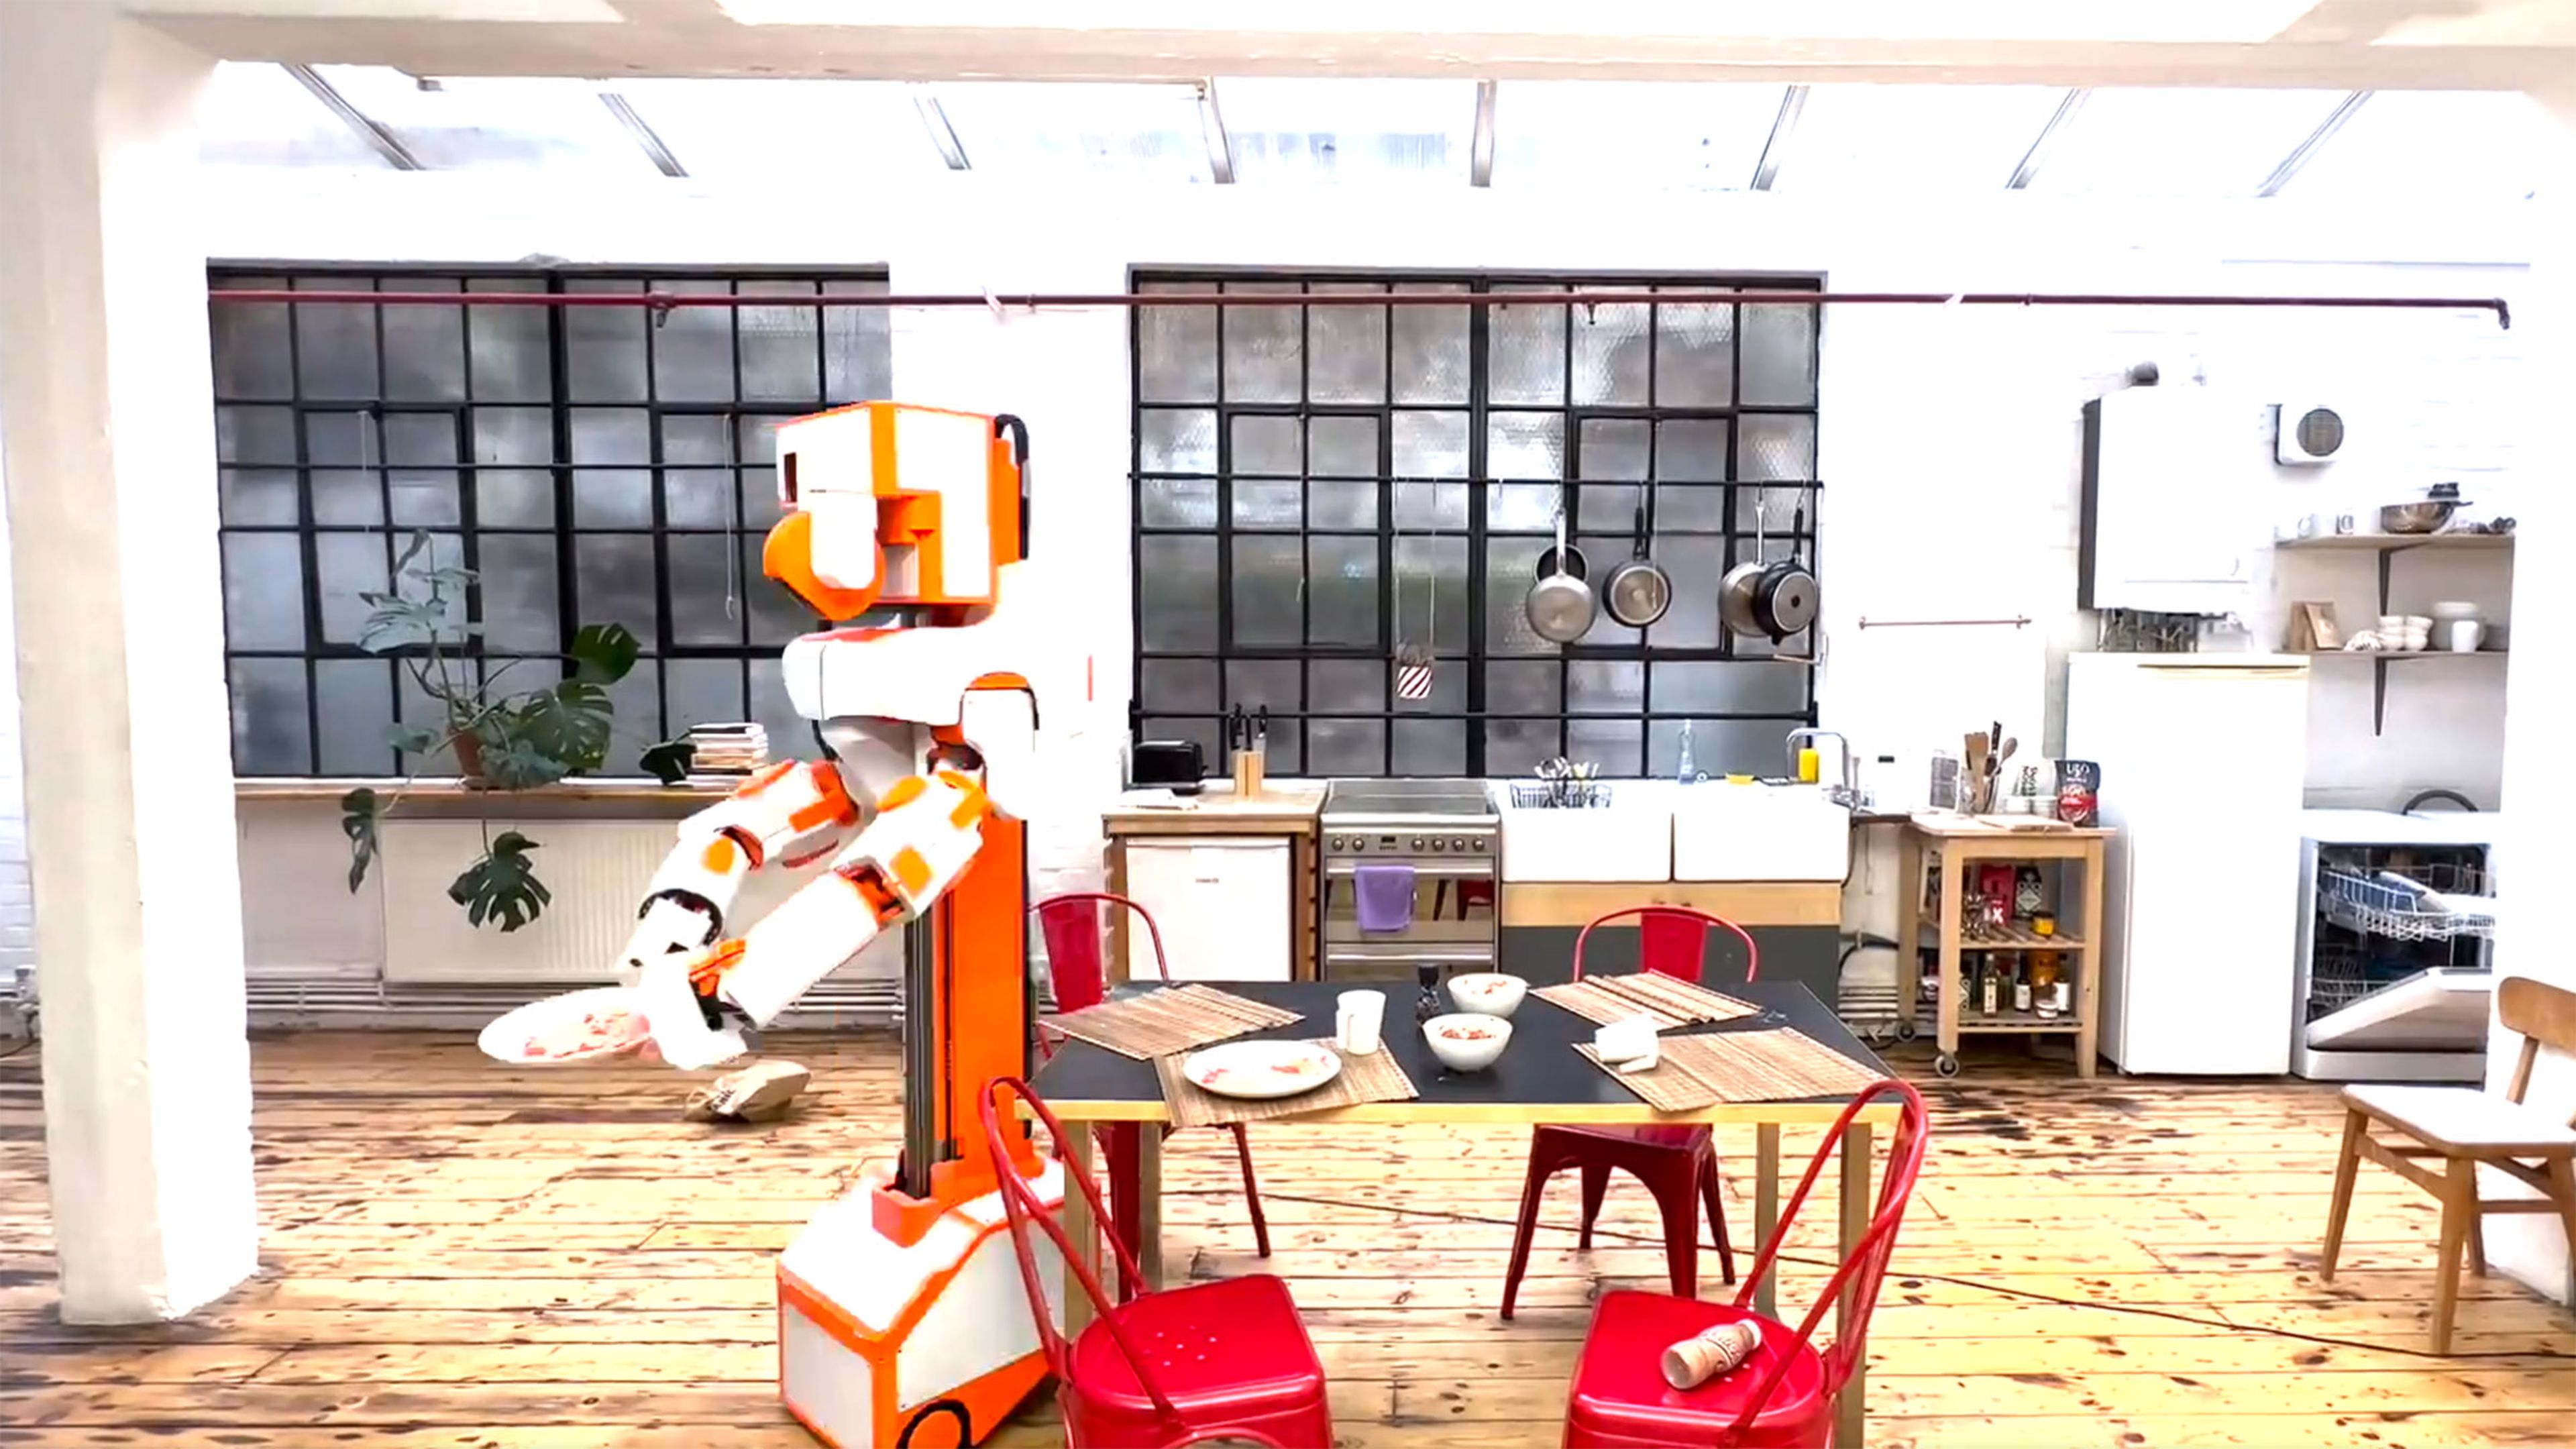 Crean un robot mayordomo para encargarse de todas tus tareas domésticas